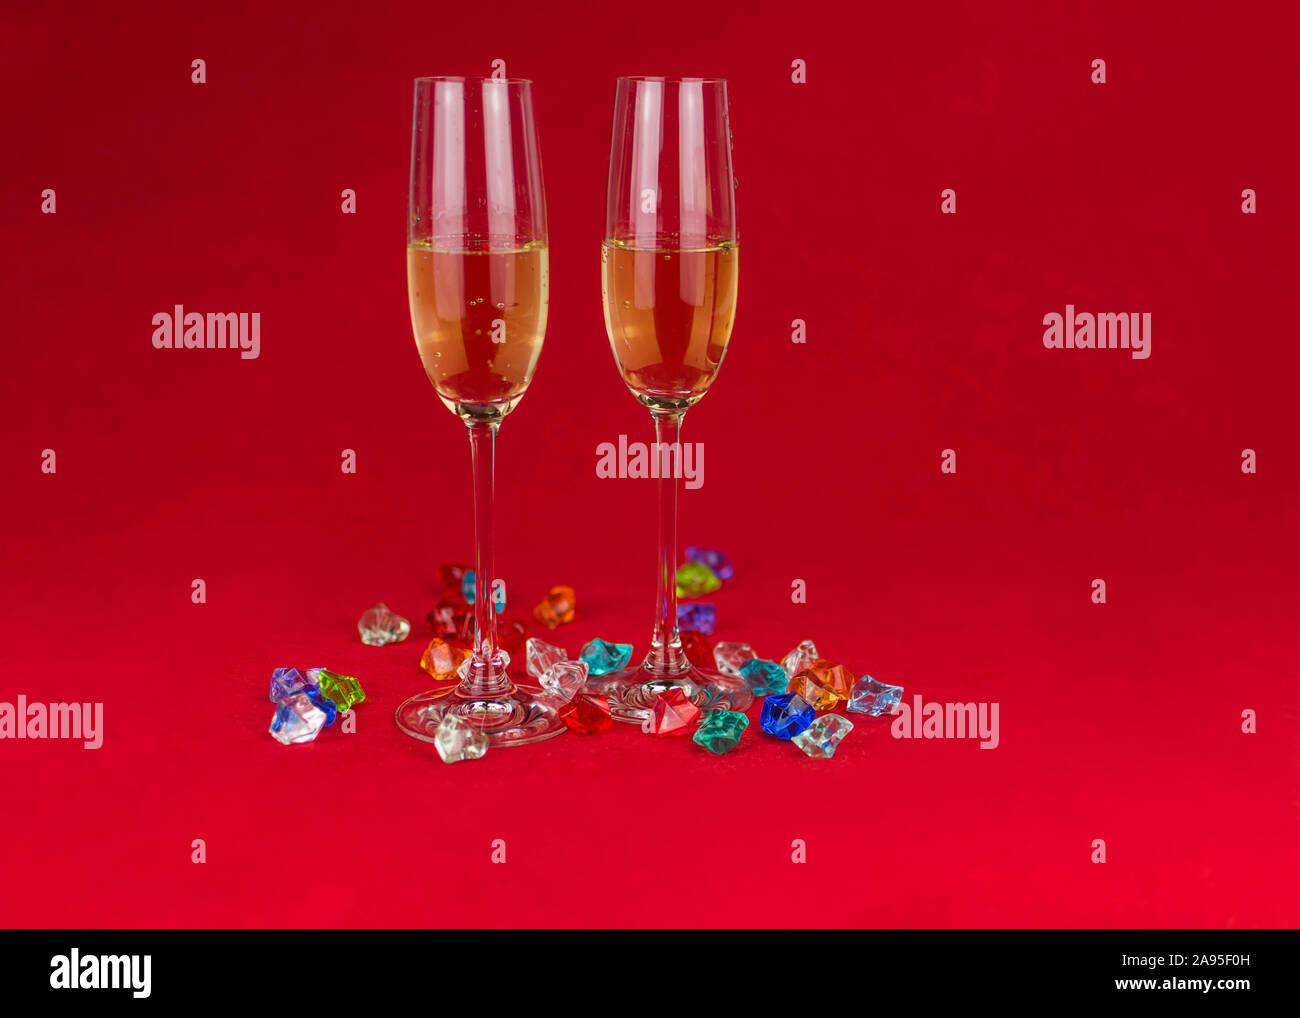 Gläser Champagner auf rotem Hintergrund und funkelnden Schmucksteinen auf Basis von Ant im Vordergrund. Neues Jahr oder romantische Feier. Luxus. Freier Speicherplatz Stockfoto